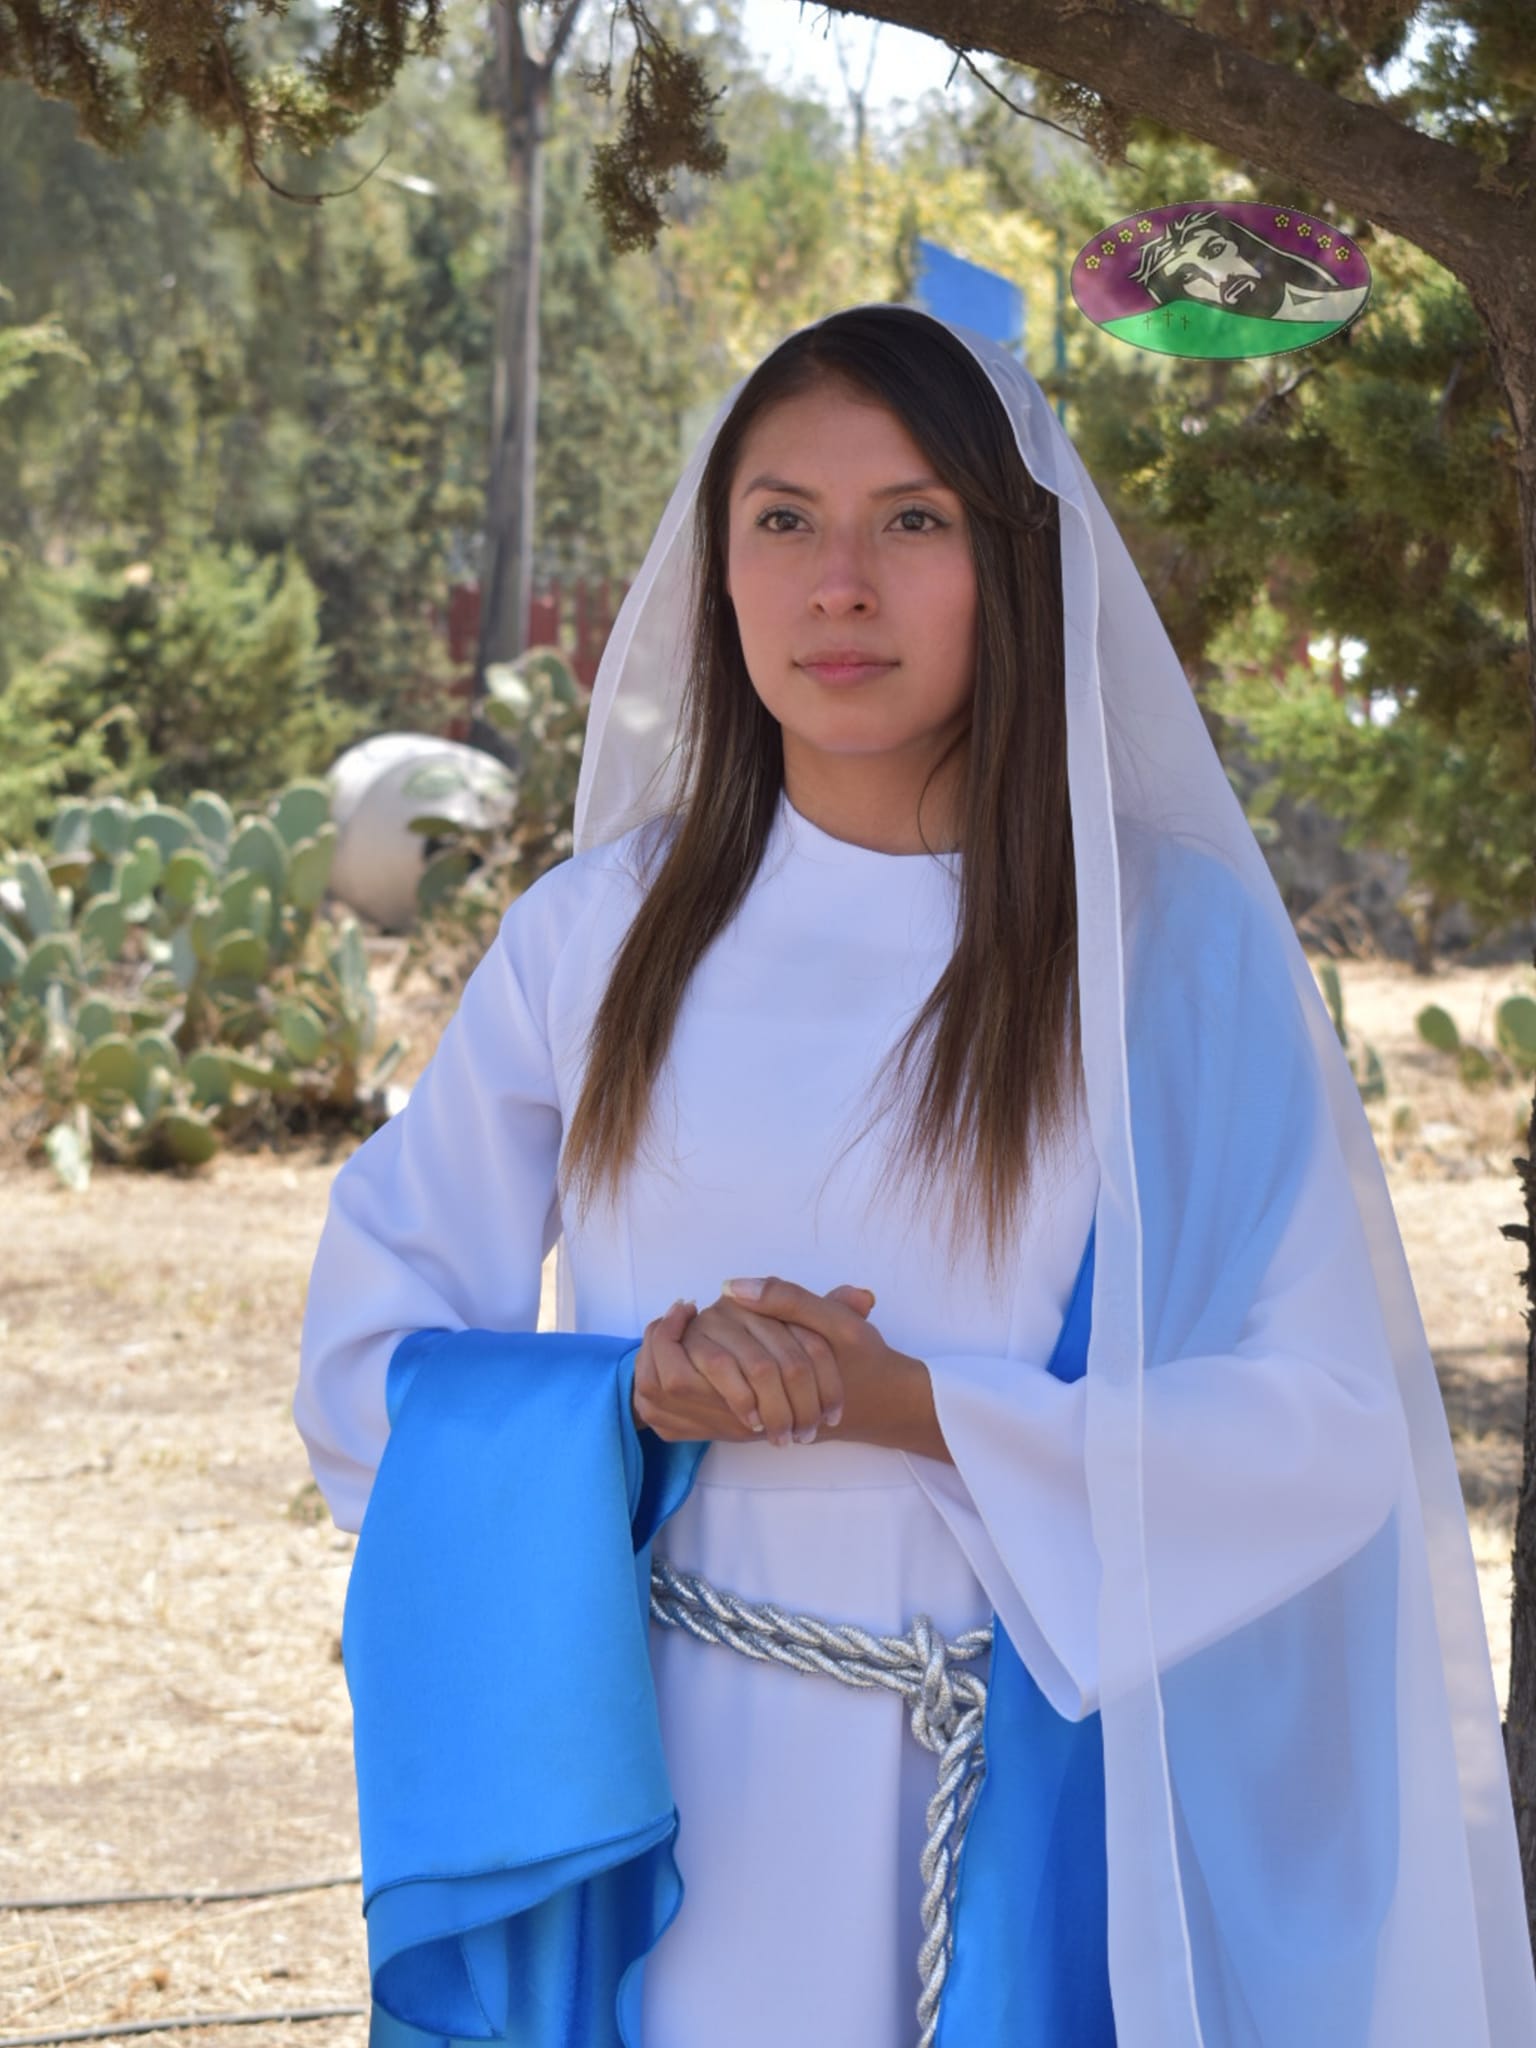 Uri Celeste para representar a María en la Pasión de Iztapalapa.